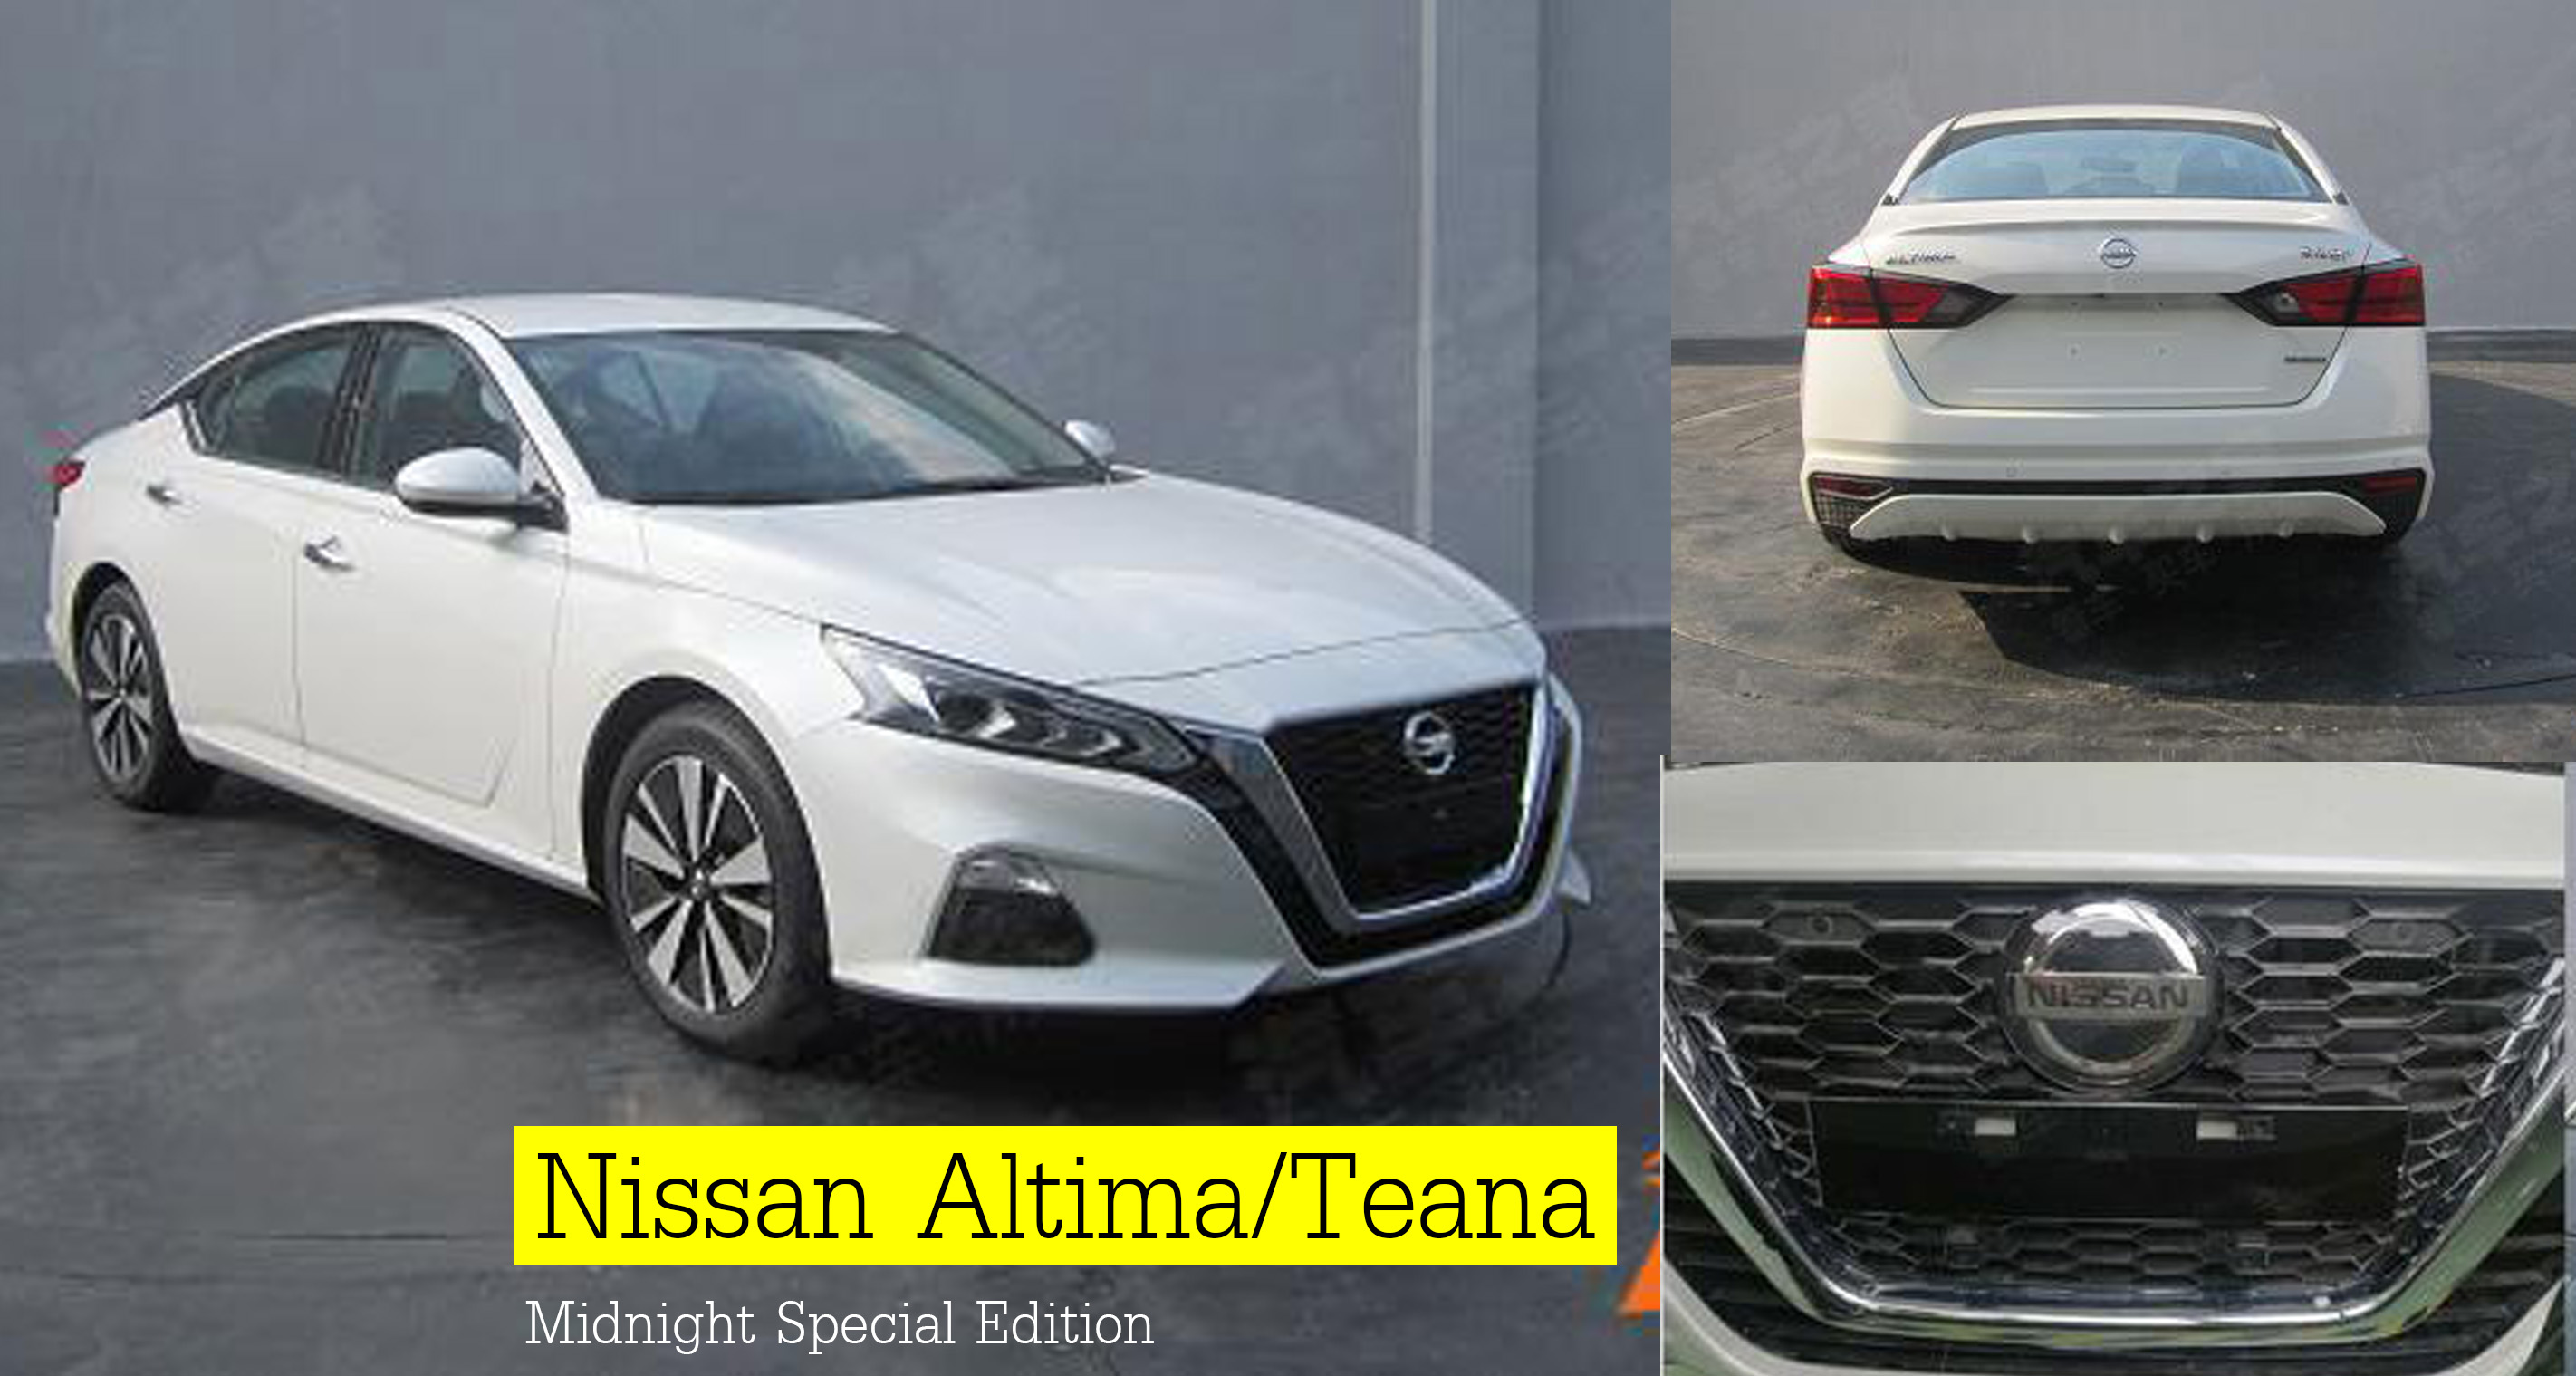 เผยภาพ! Nissan Altima/Teana Midnight Special Edition ชุดแต่งพิเศษ ในเมืองจีน